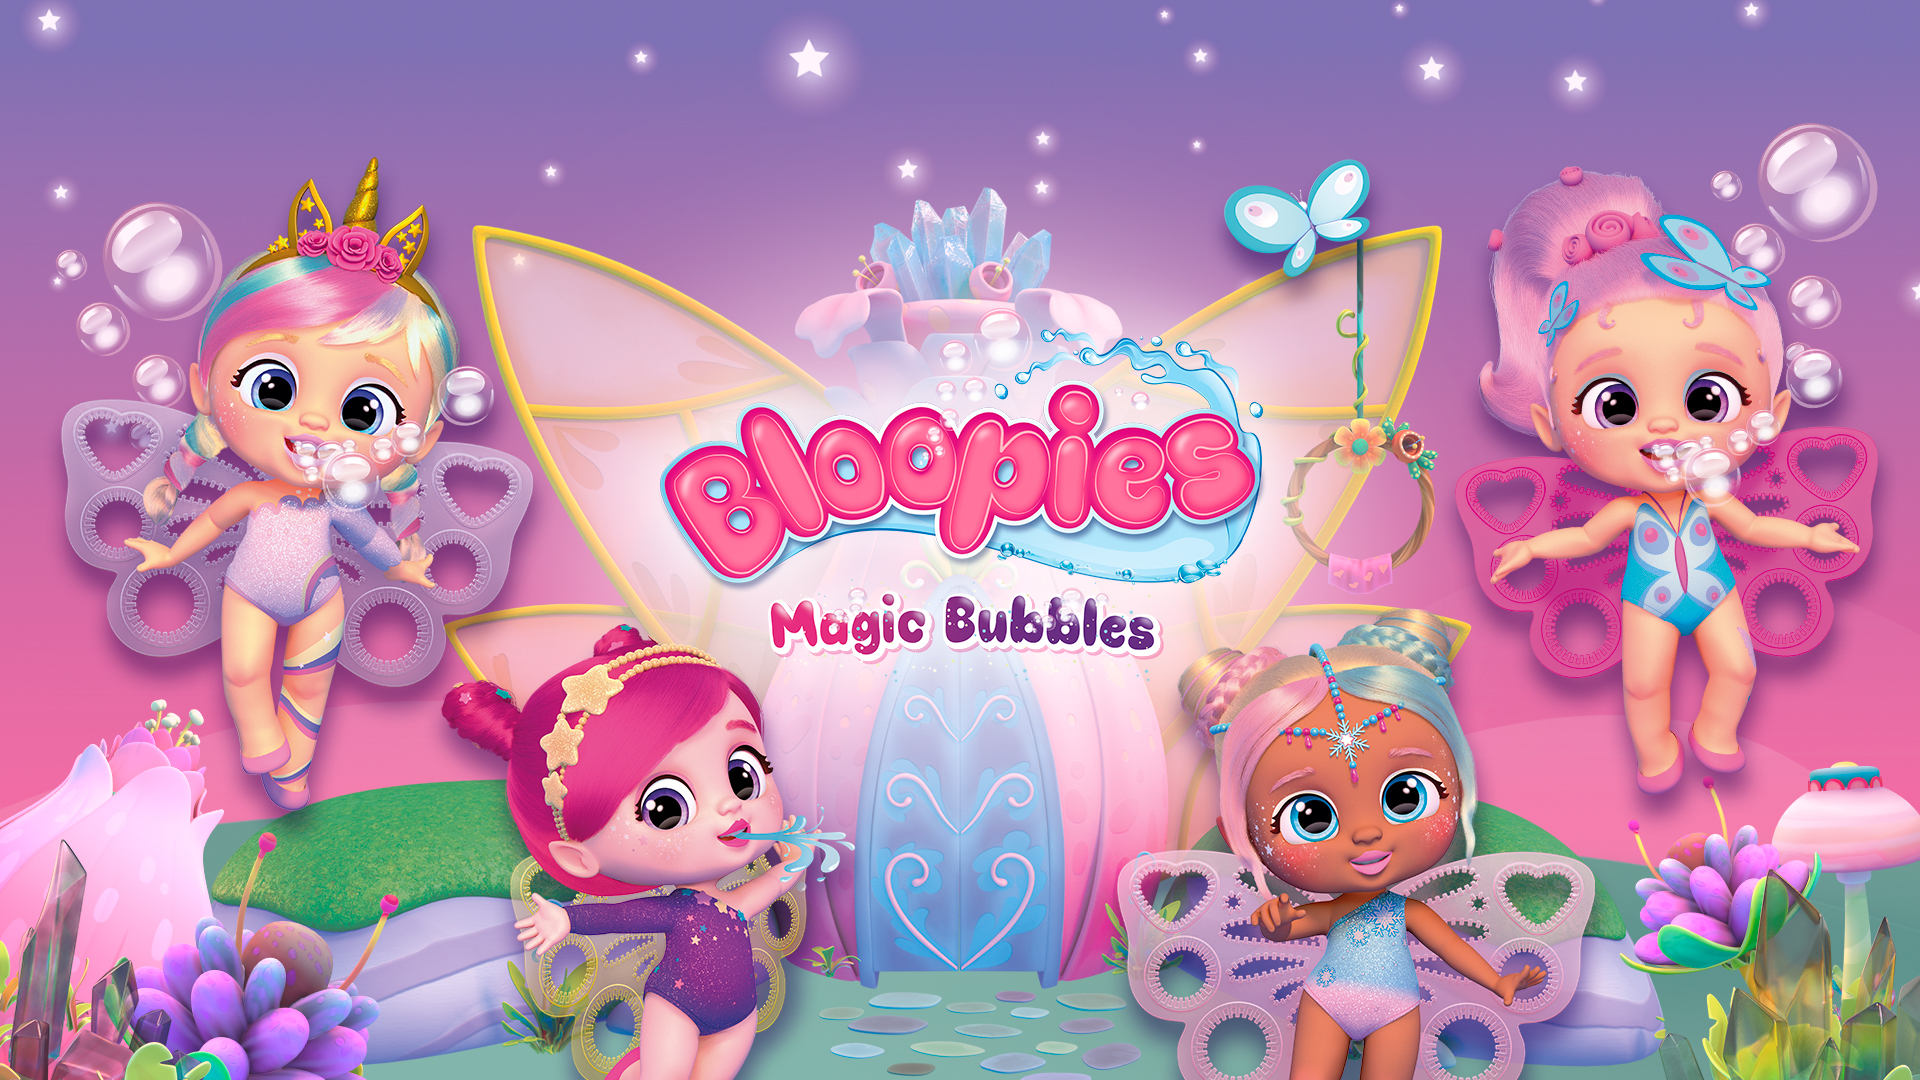 Bloopies Fairies Magic Bubbles - Kitoons